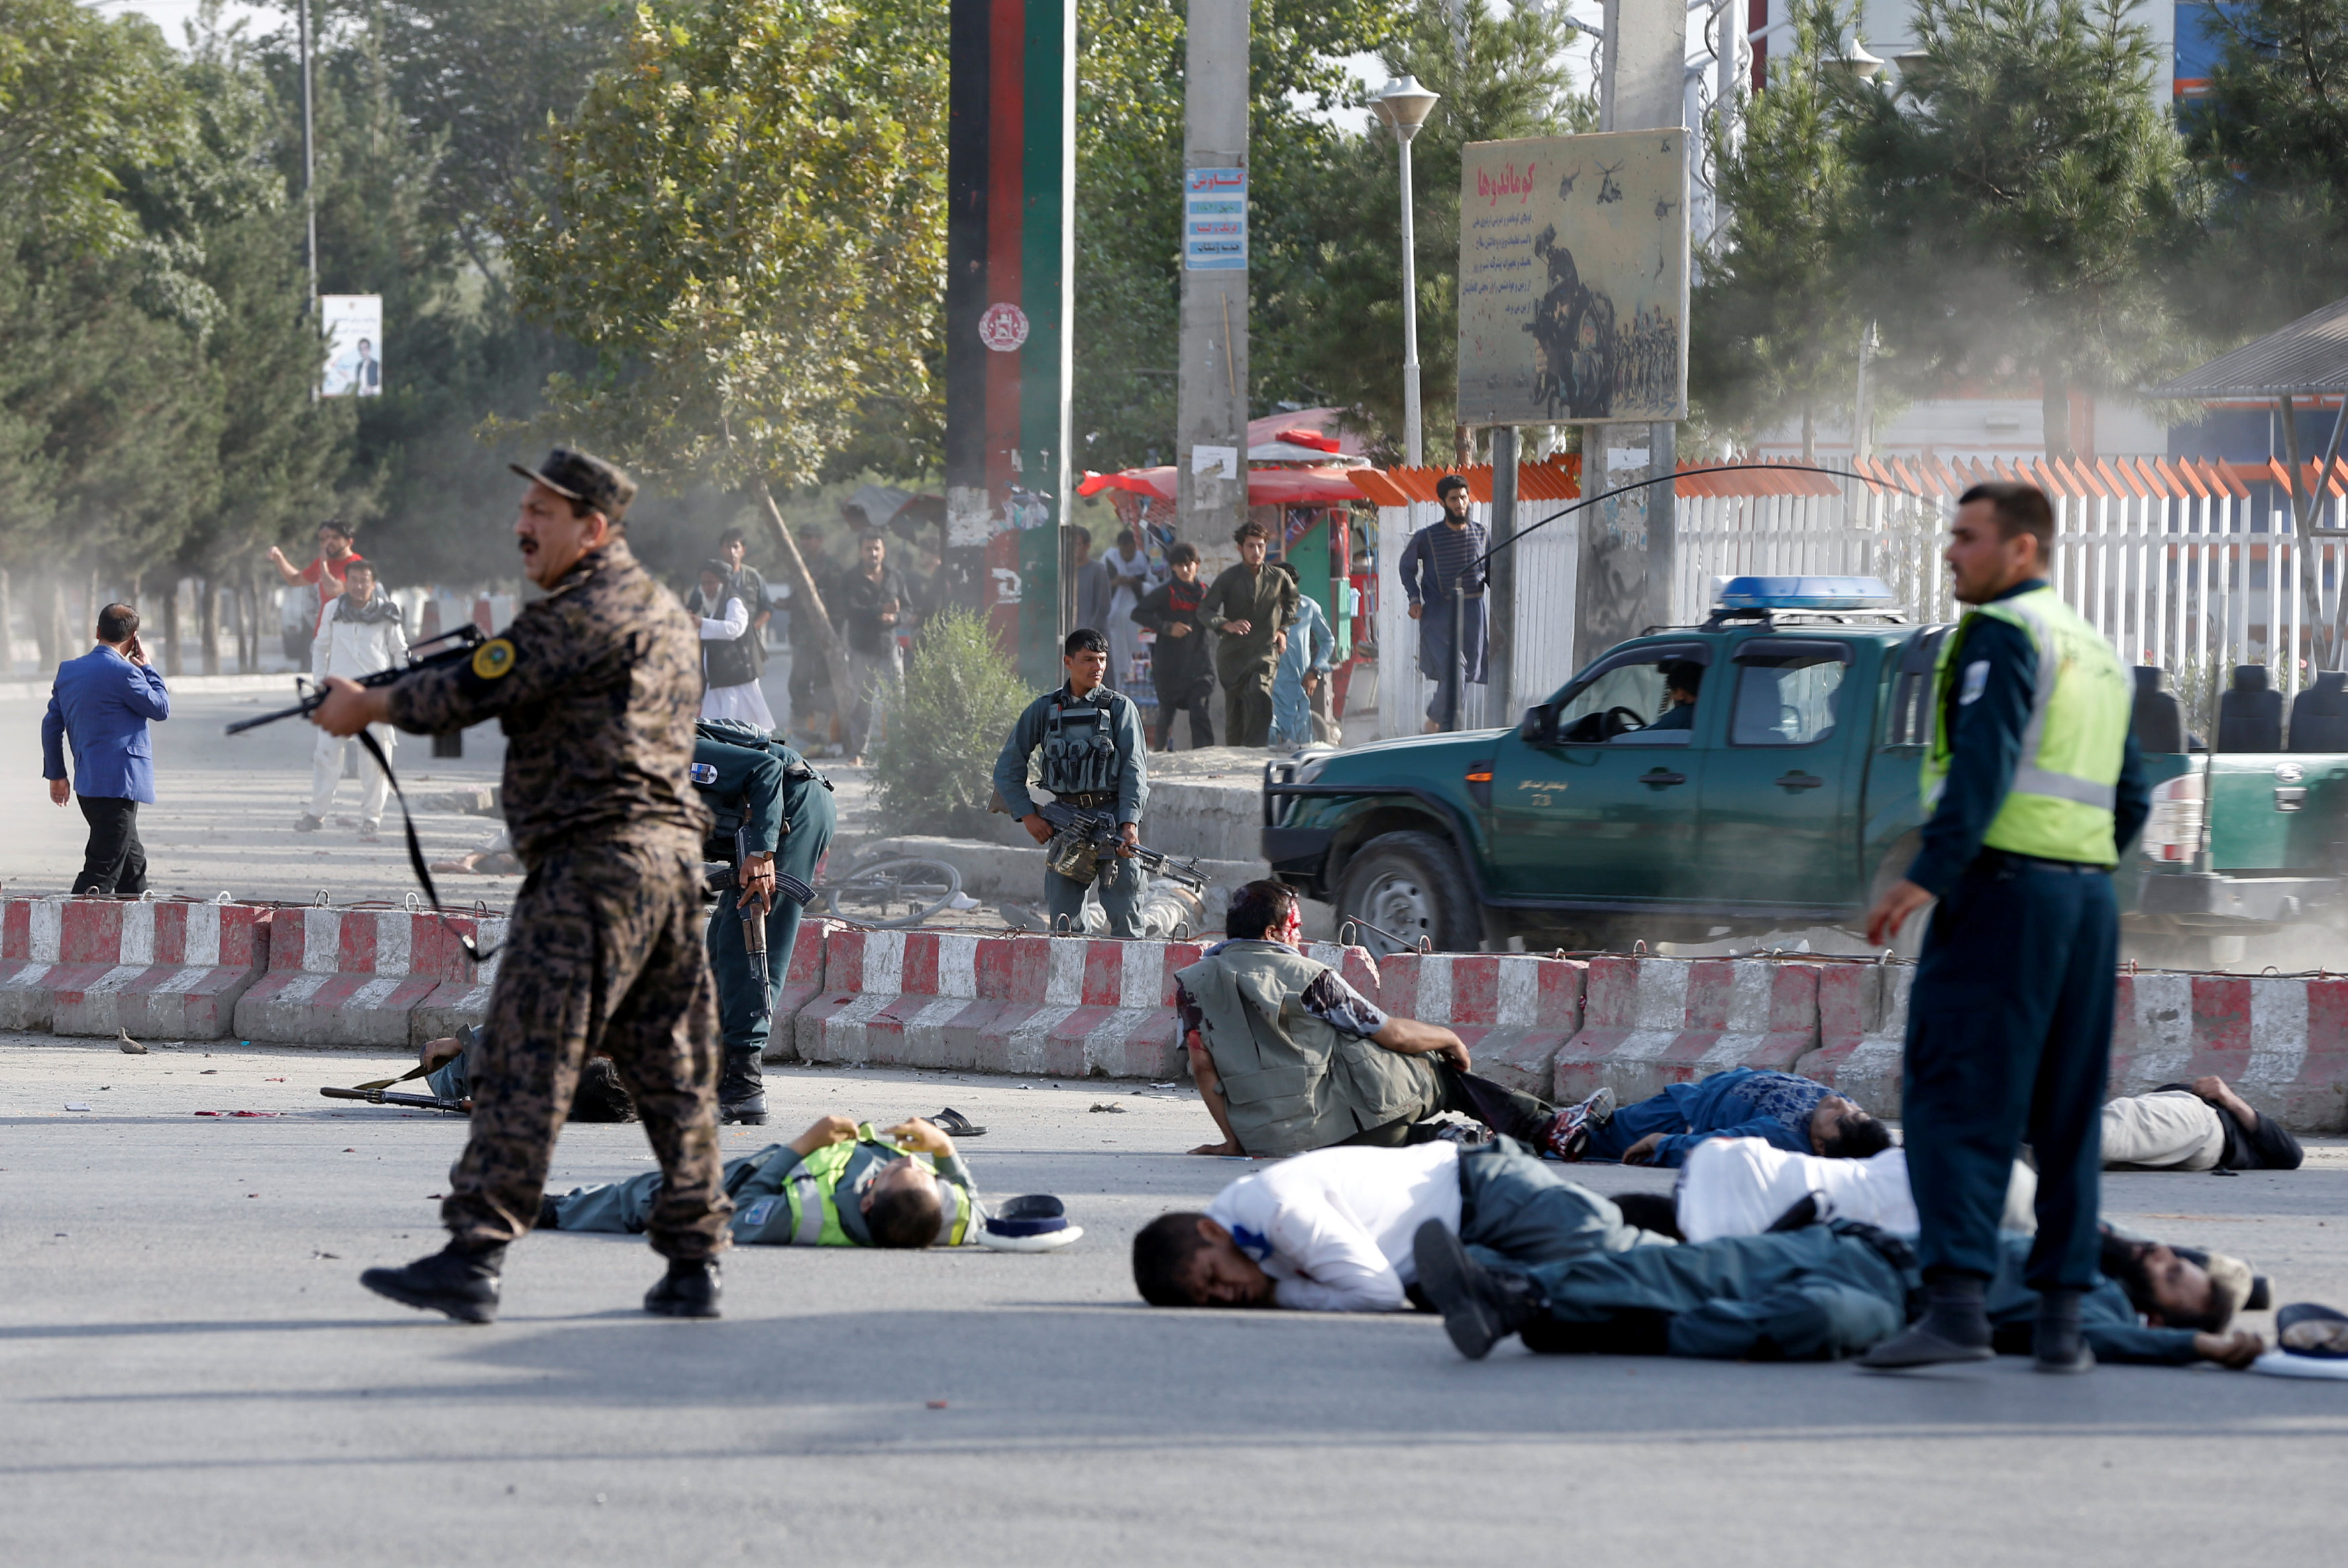 مشاهد أولية تظهر عددا من المصابين على الأرض بعد انفجار وقع قرب مطار كابول. 22 يوليو 2018. عمر سبحاني/ رويترز